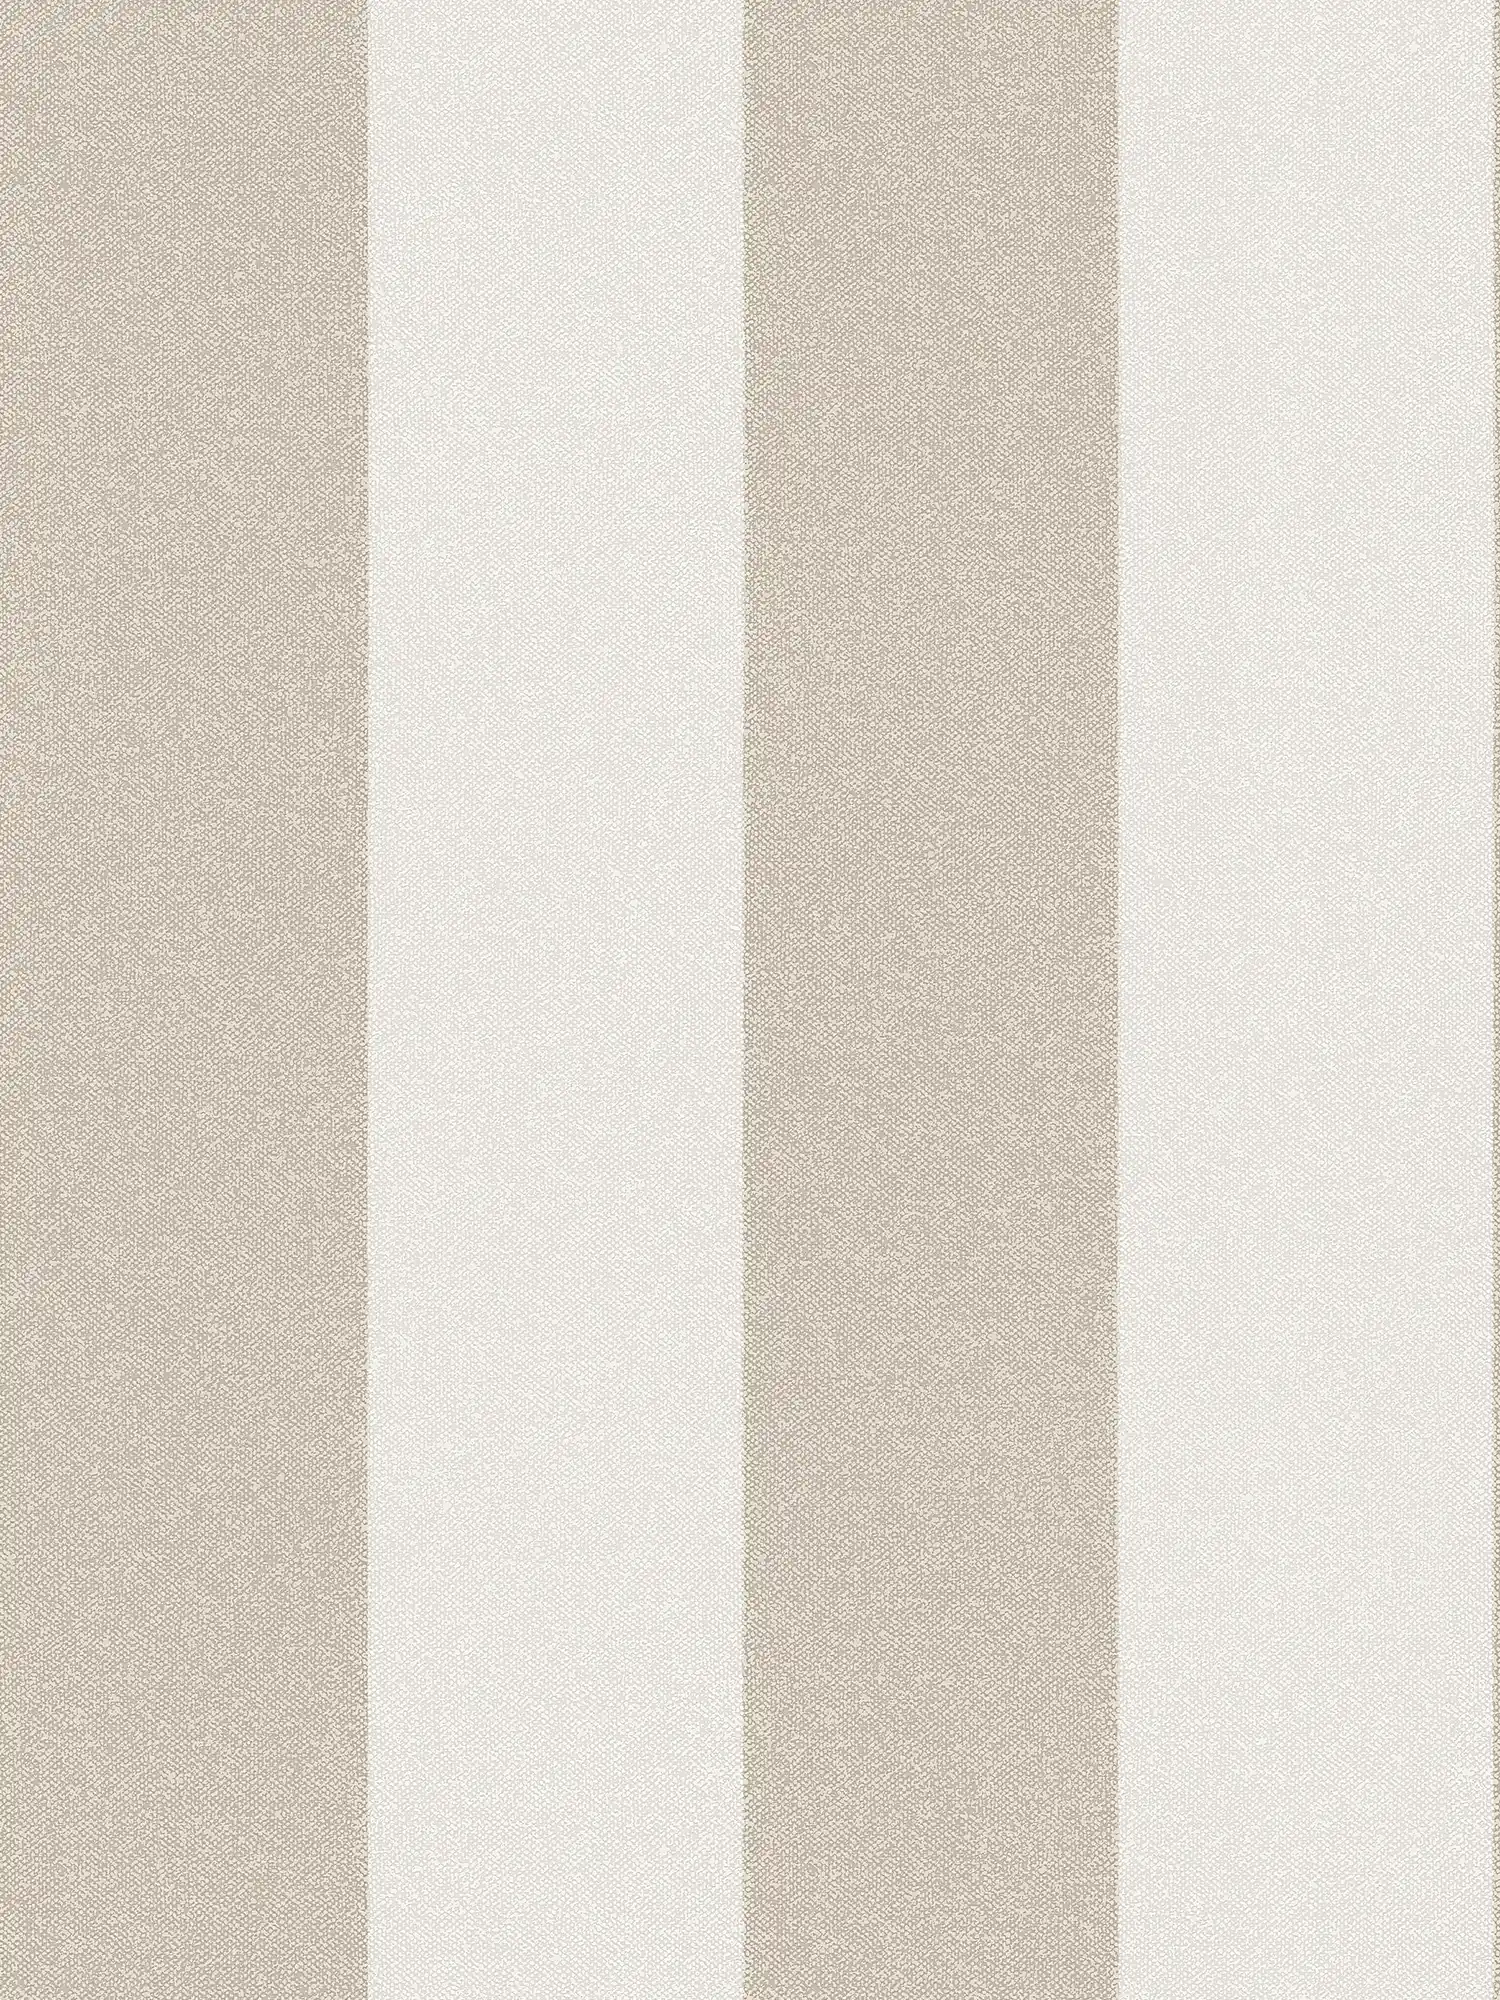         Papier peint à rayures en bloc aspect lin - marron, crème, beige
    